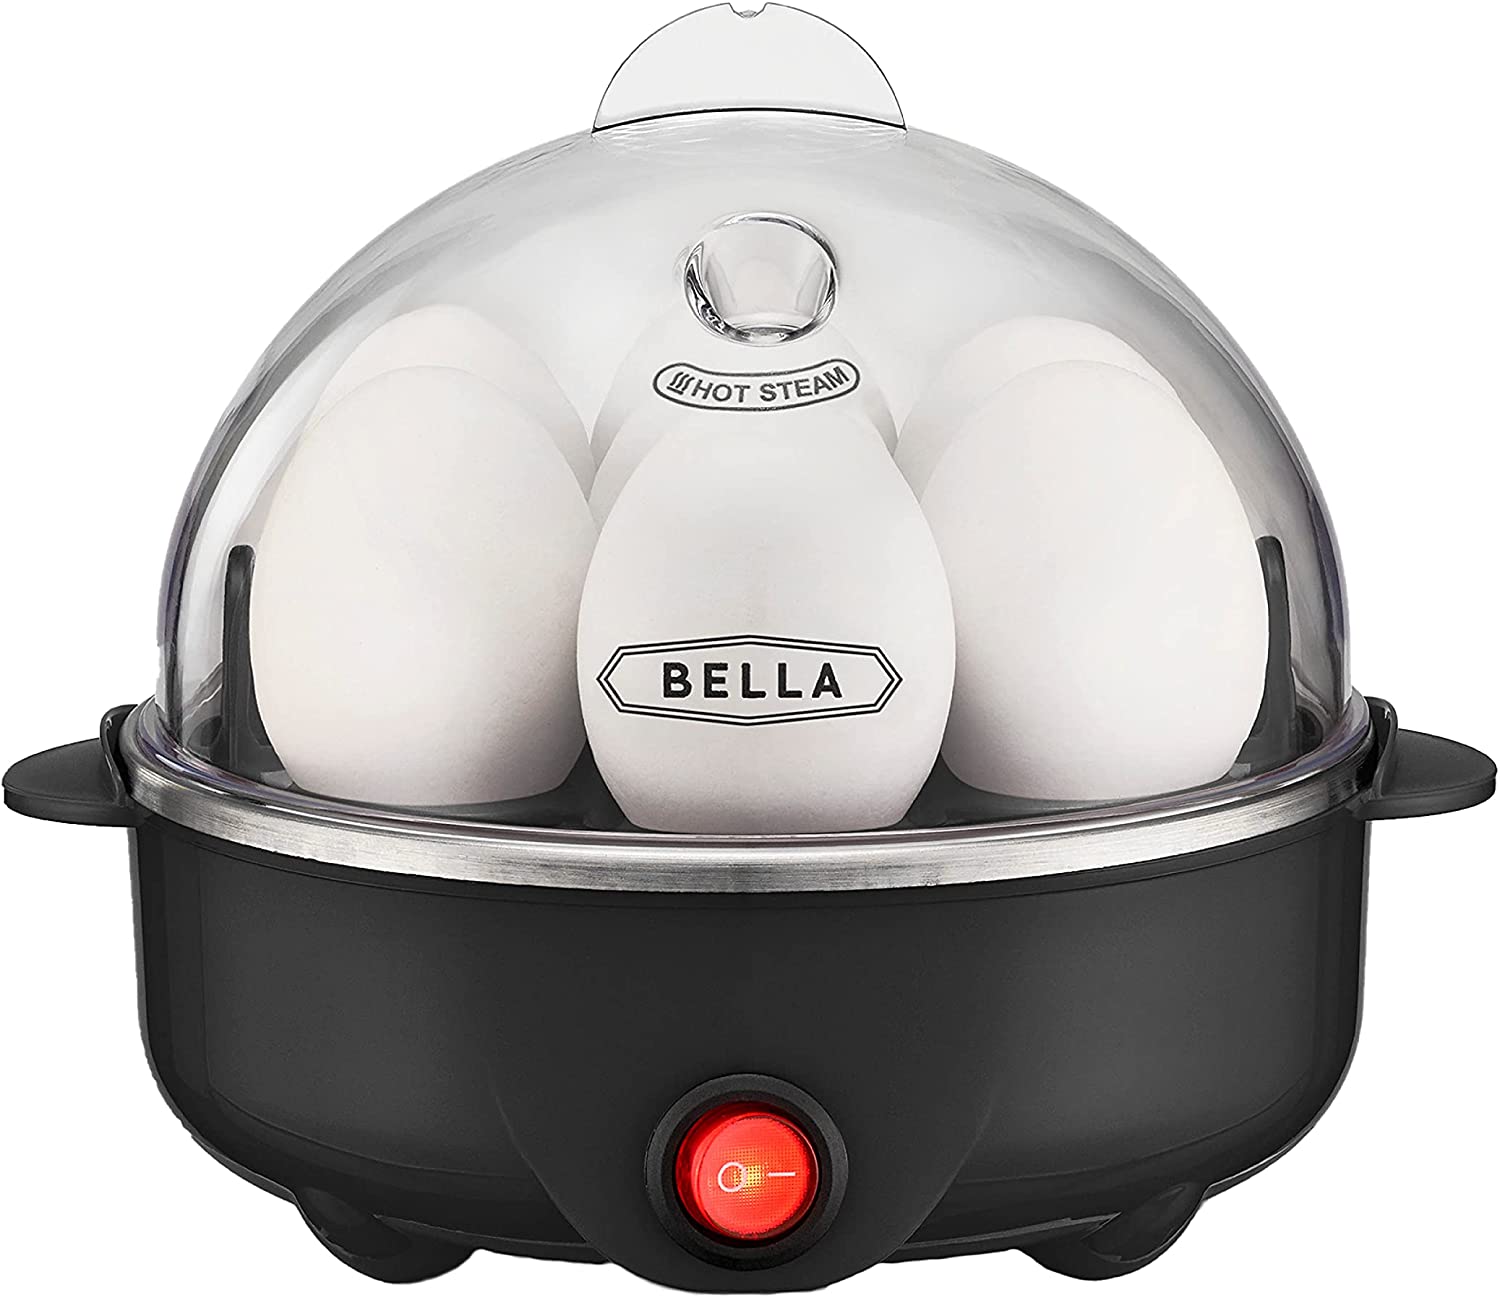 BELLA 17284 Egg Cooker White